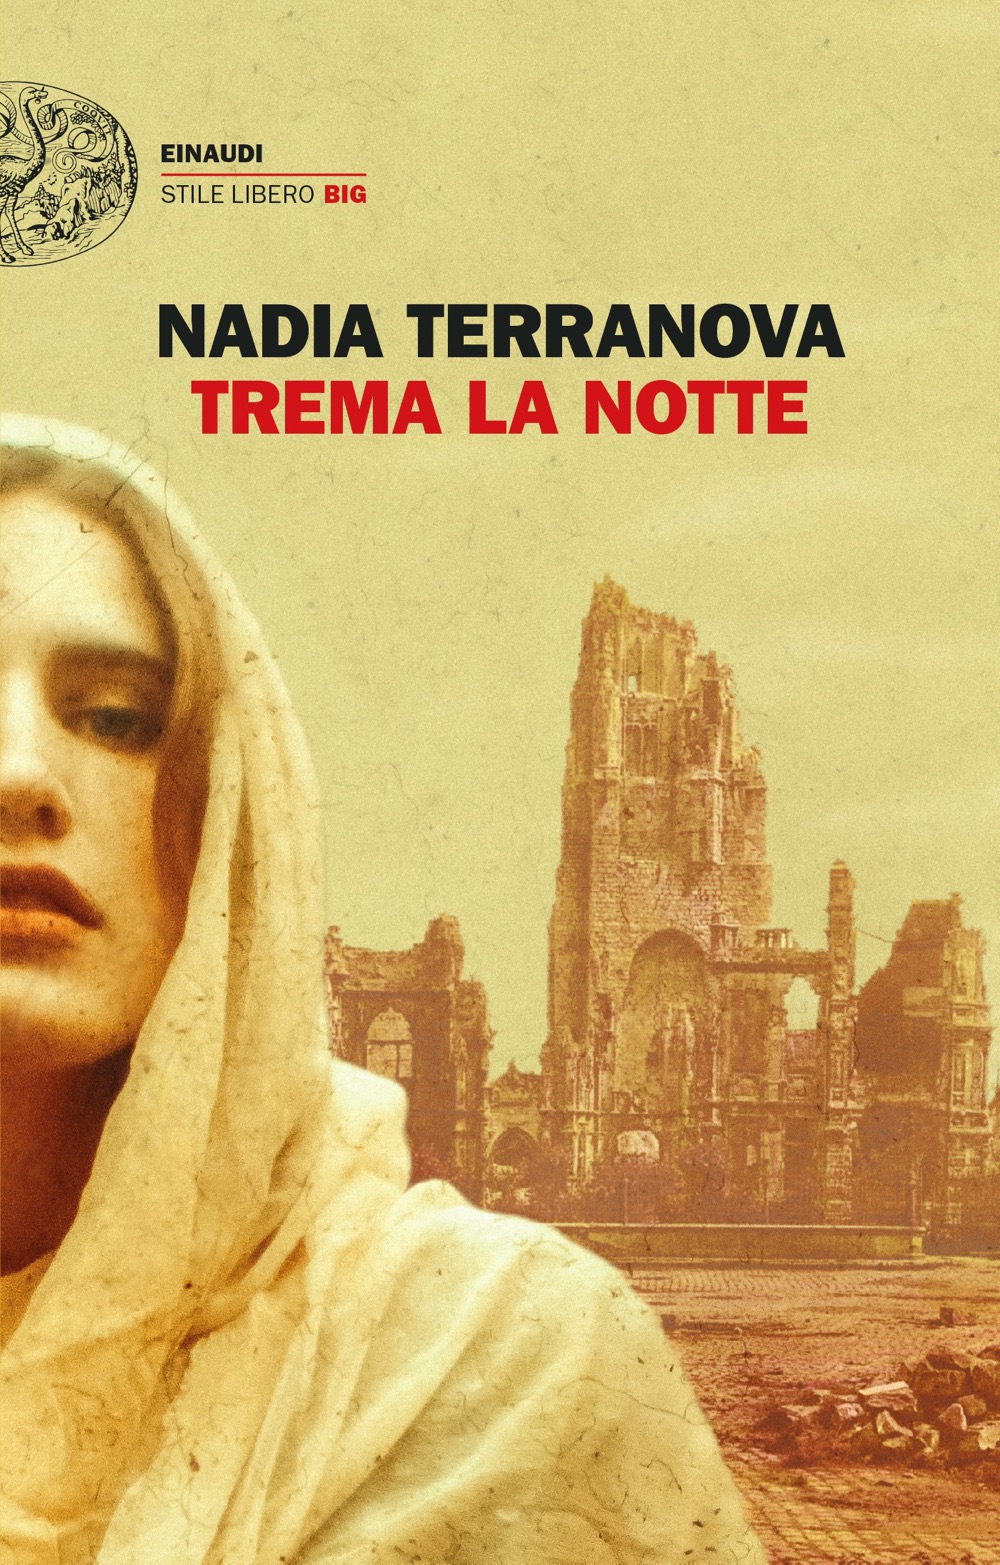 “Trema la notte” – Nadia Terranova